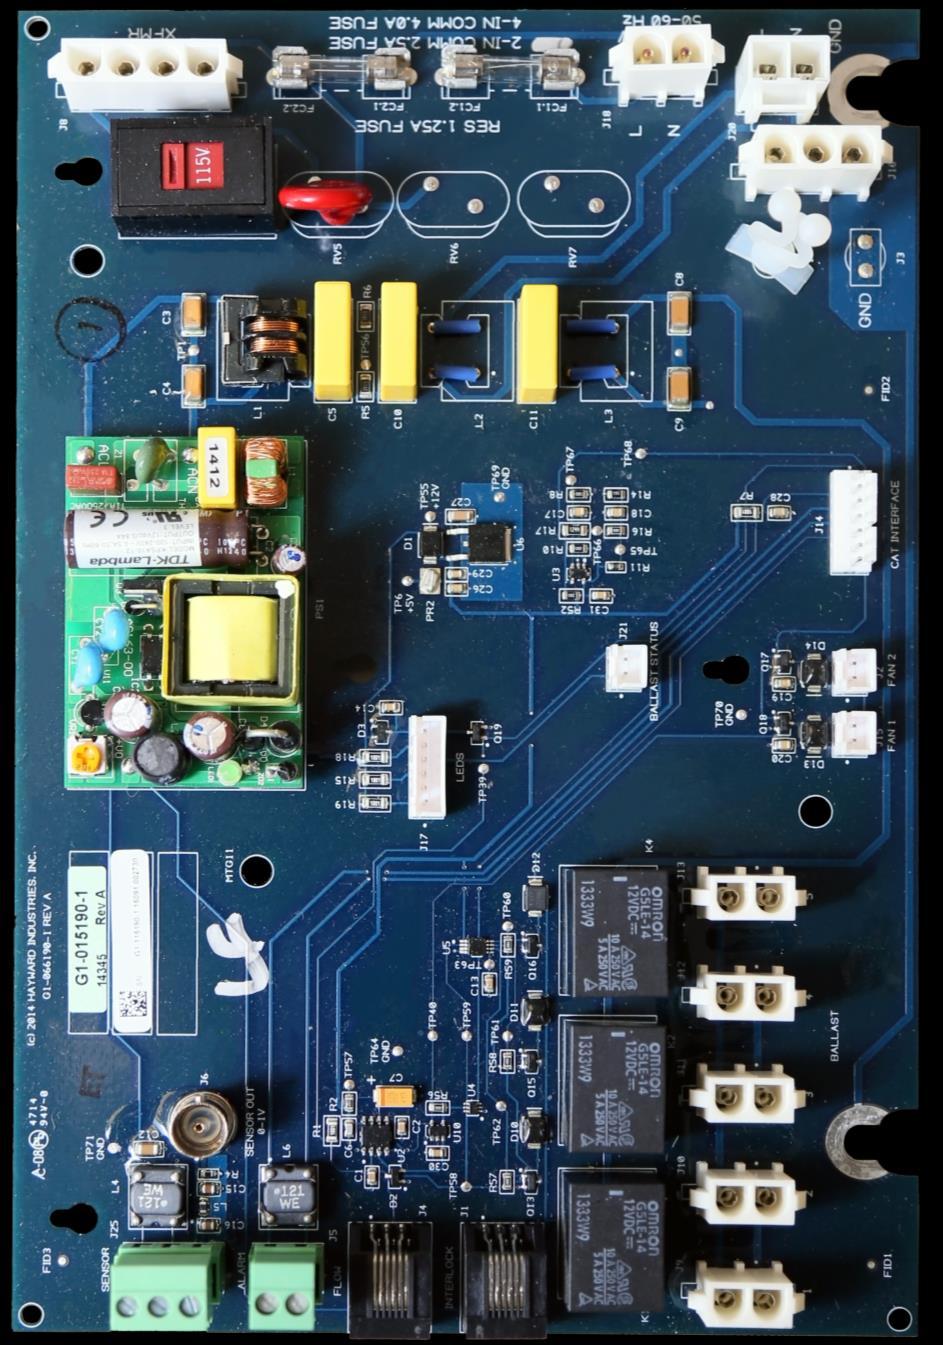 HydroRite: PCB Overview A B C D A Transformer Input (120VAC) E F G H B C D E F G H I 2X (1.